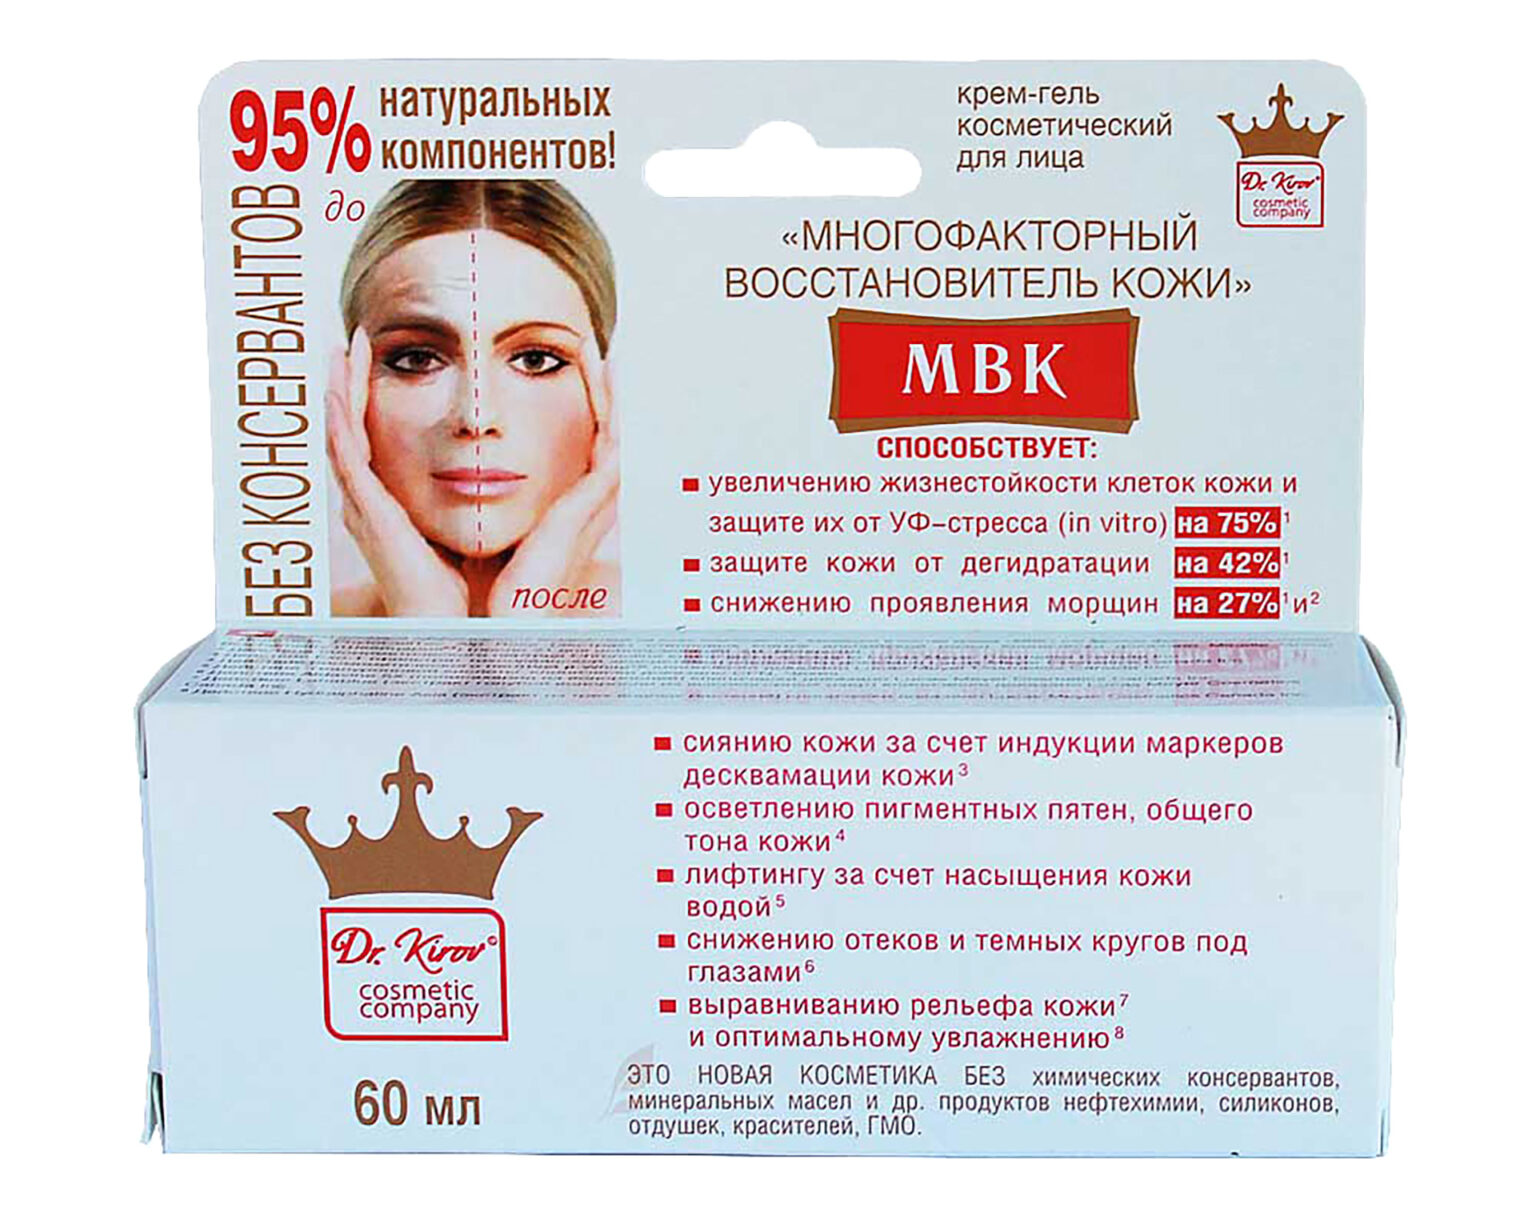 Купить крем киров. Dr. Kirov Cosmetic многофакторный восстановитель кожи. Многофакторный восстановитель кожи крем-гель д/лица 60 мл. Многофакторный восстановитель кожи крем для лица. Крем для лица МВК.